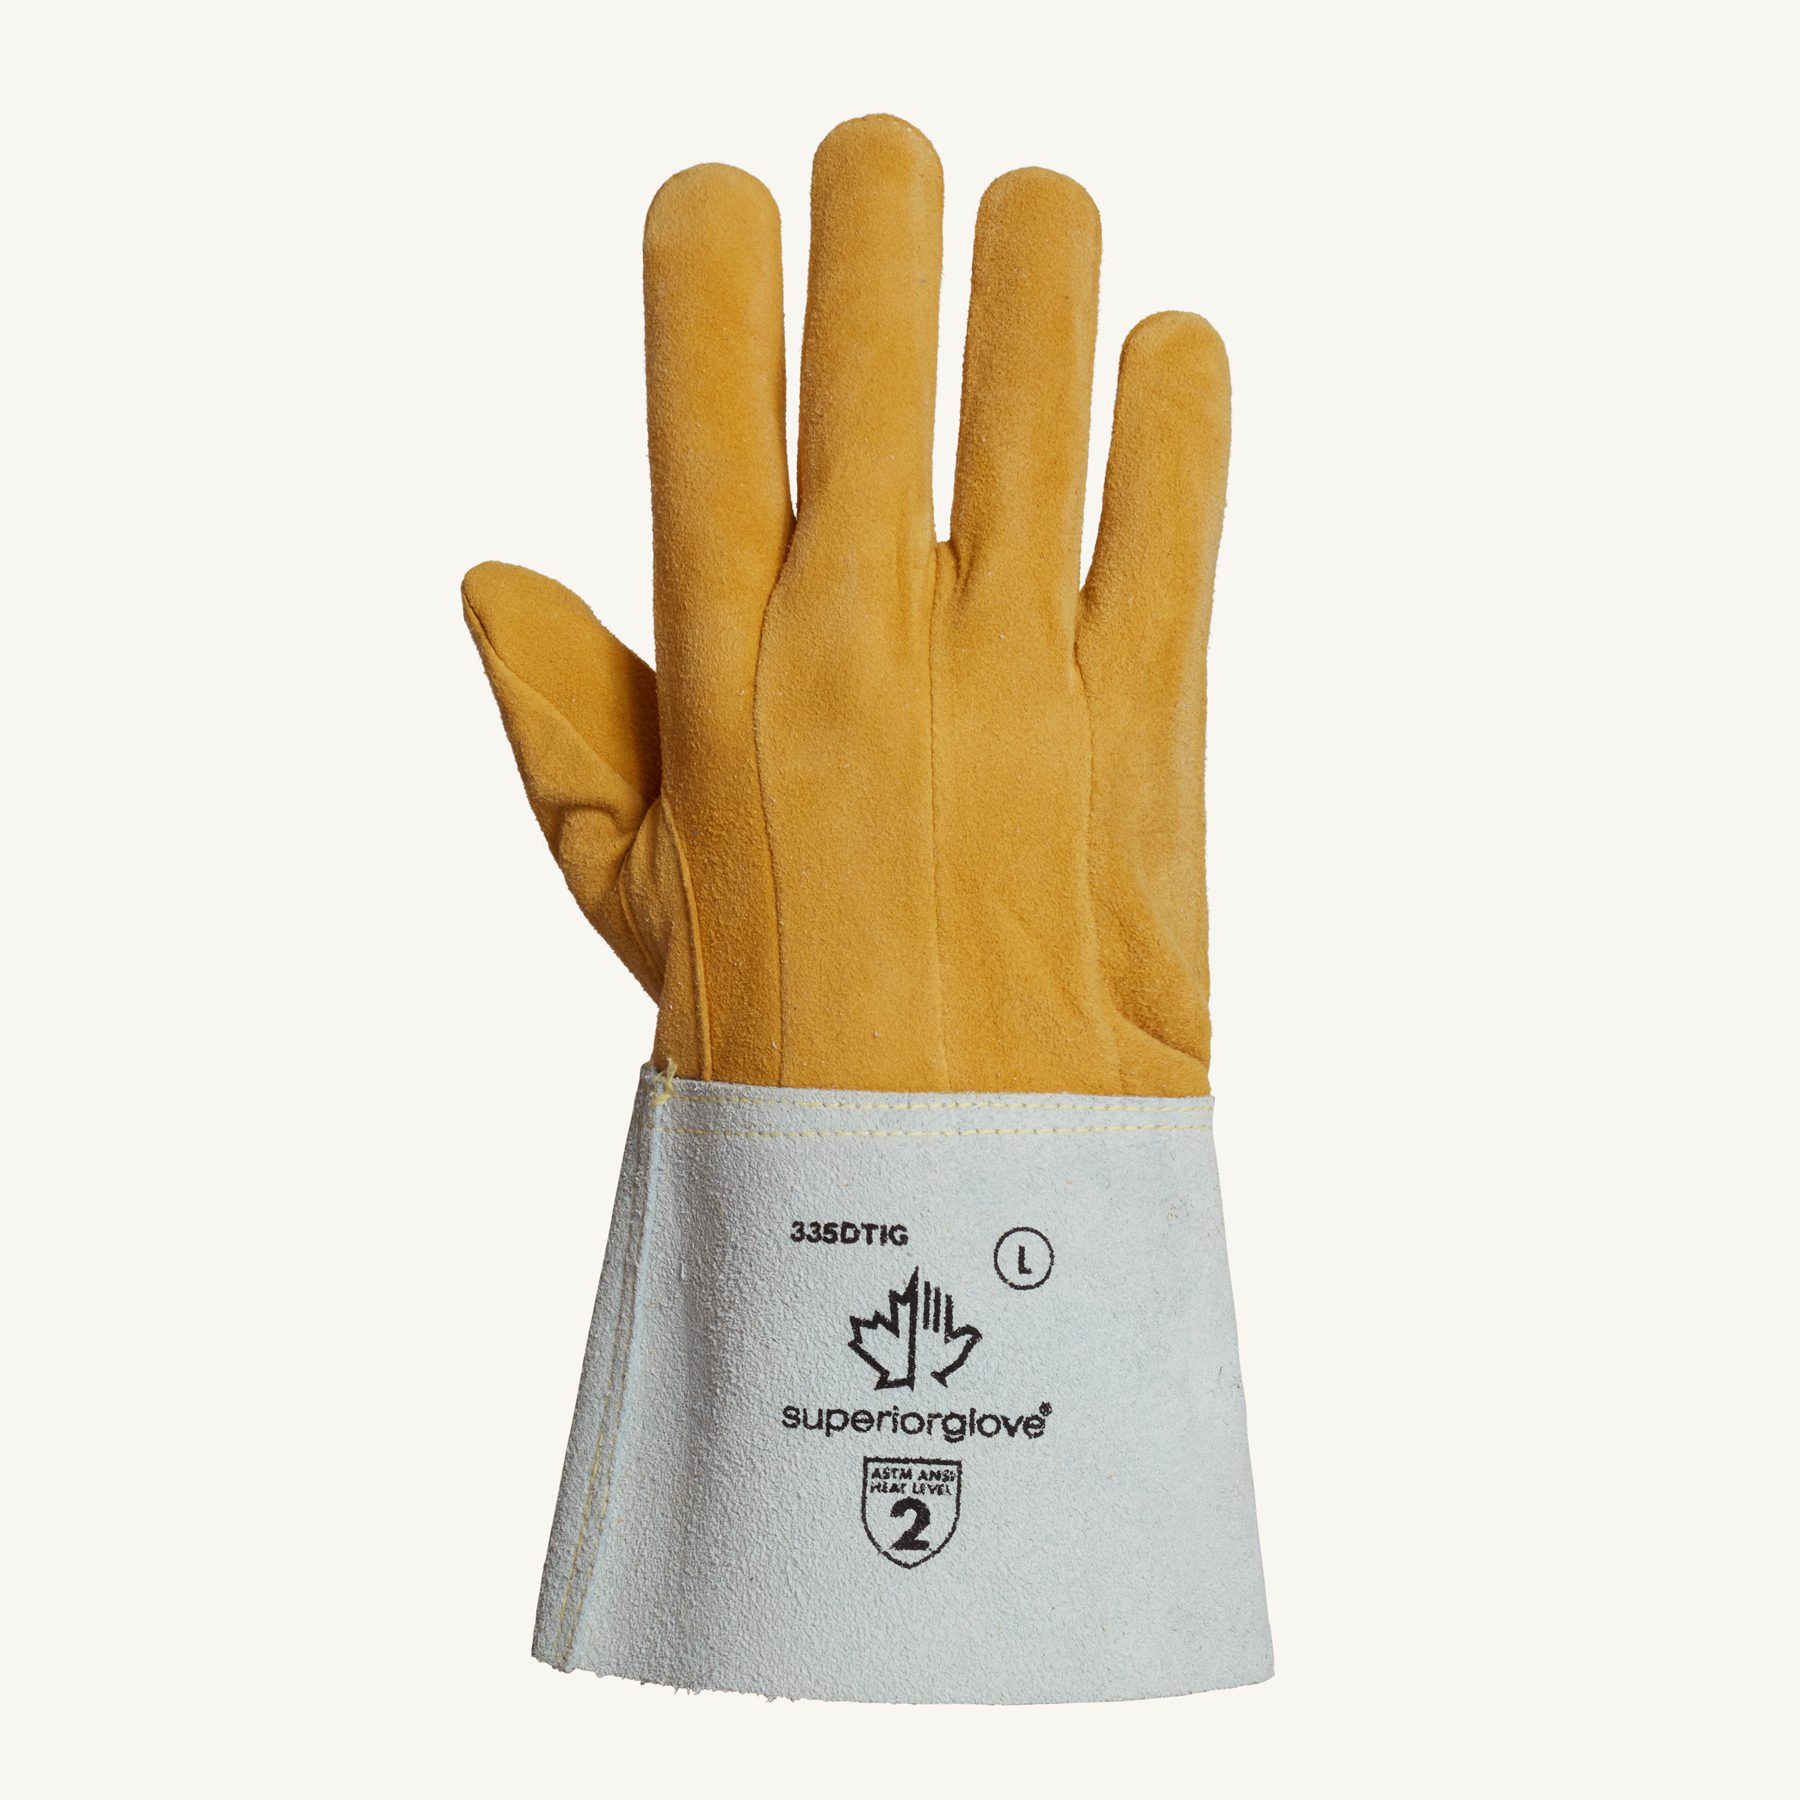 Superior Glove®  Endura® Deerskin Welding Glove #335DTIG